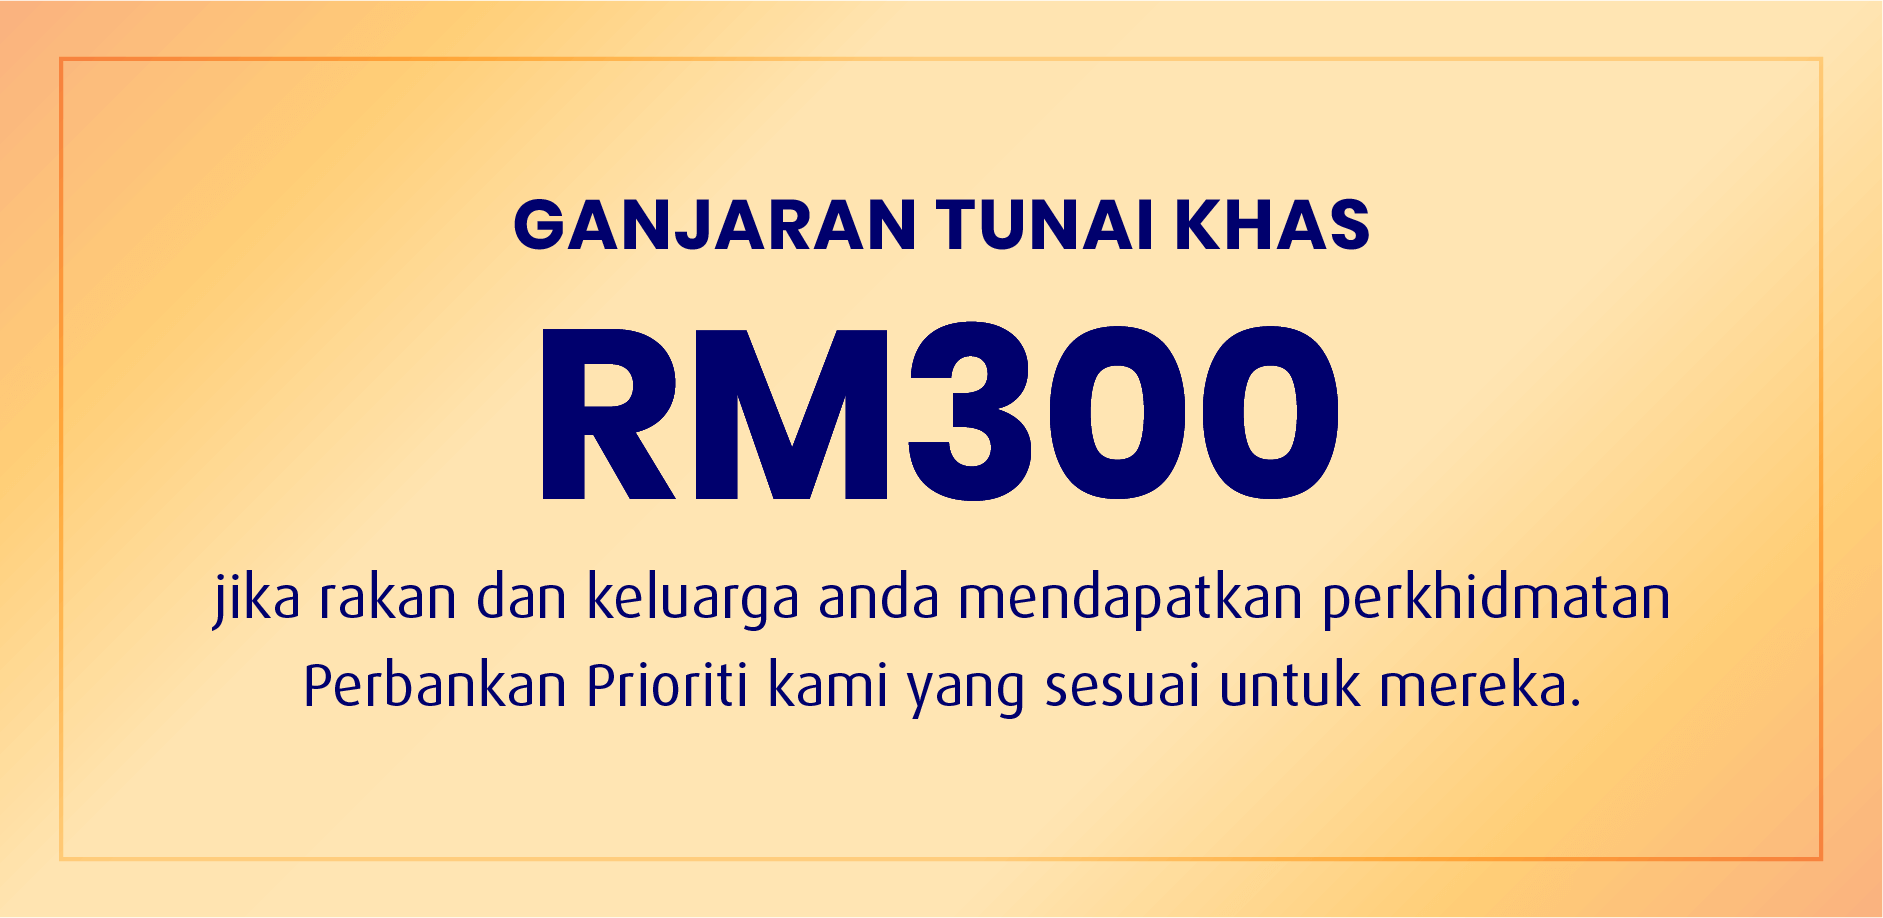 Ganjaran tunai khas RM300 jika rakan dan keluarga anda mendapatkan perkhidmatan Perbankan Prioriti kami yang sesuai untuk mereka.